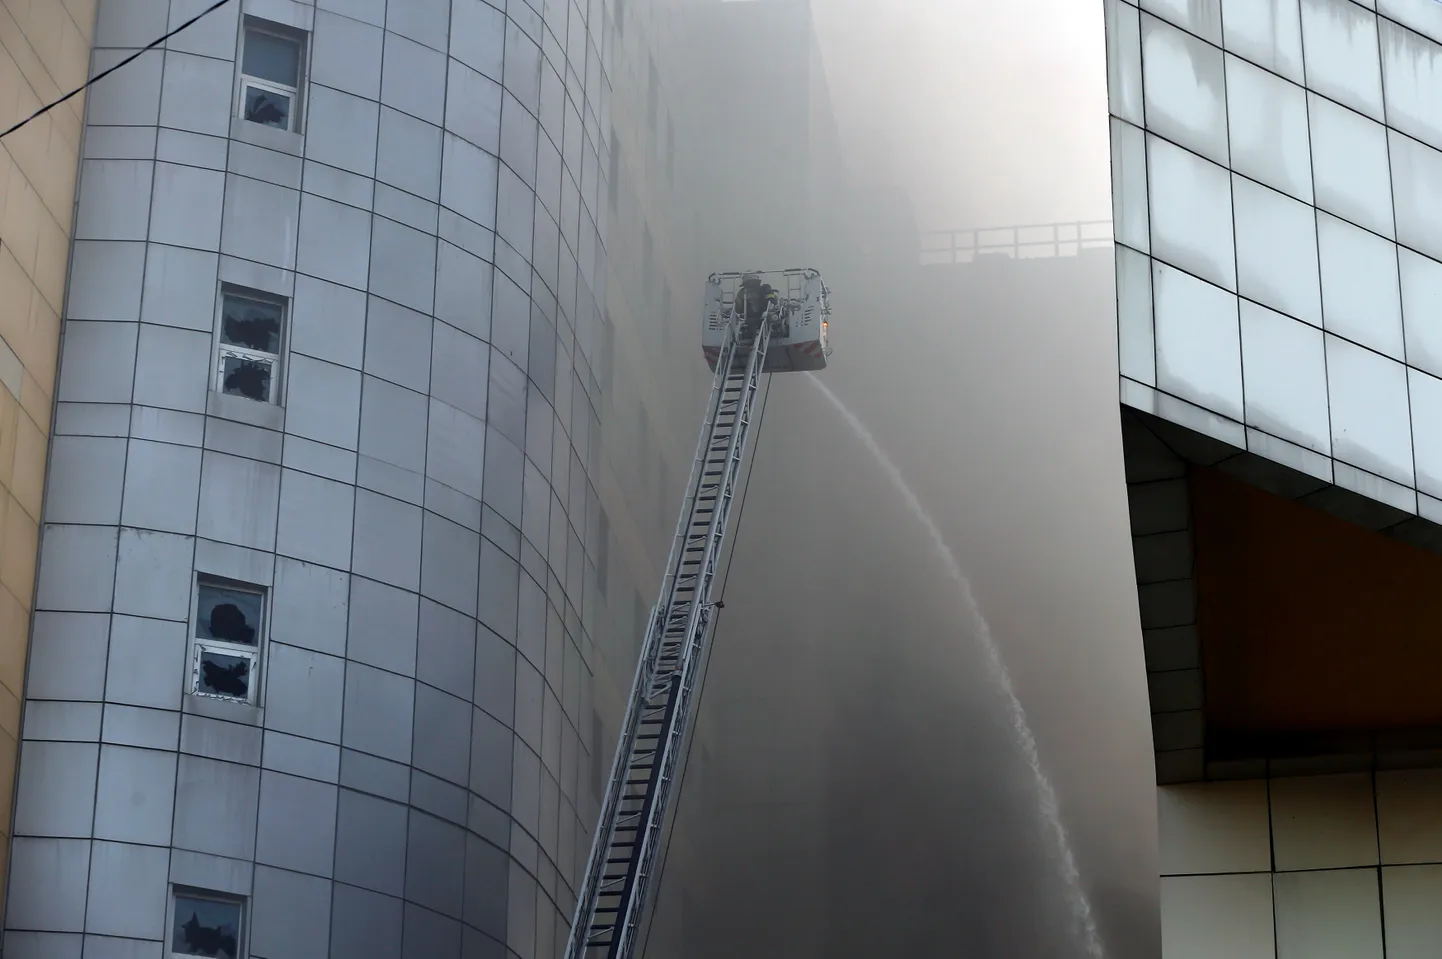 Tuletõrjuja kustutamas põlengut Taksim İlk Yardımi haiglas Istanbulis.